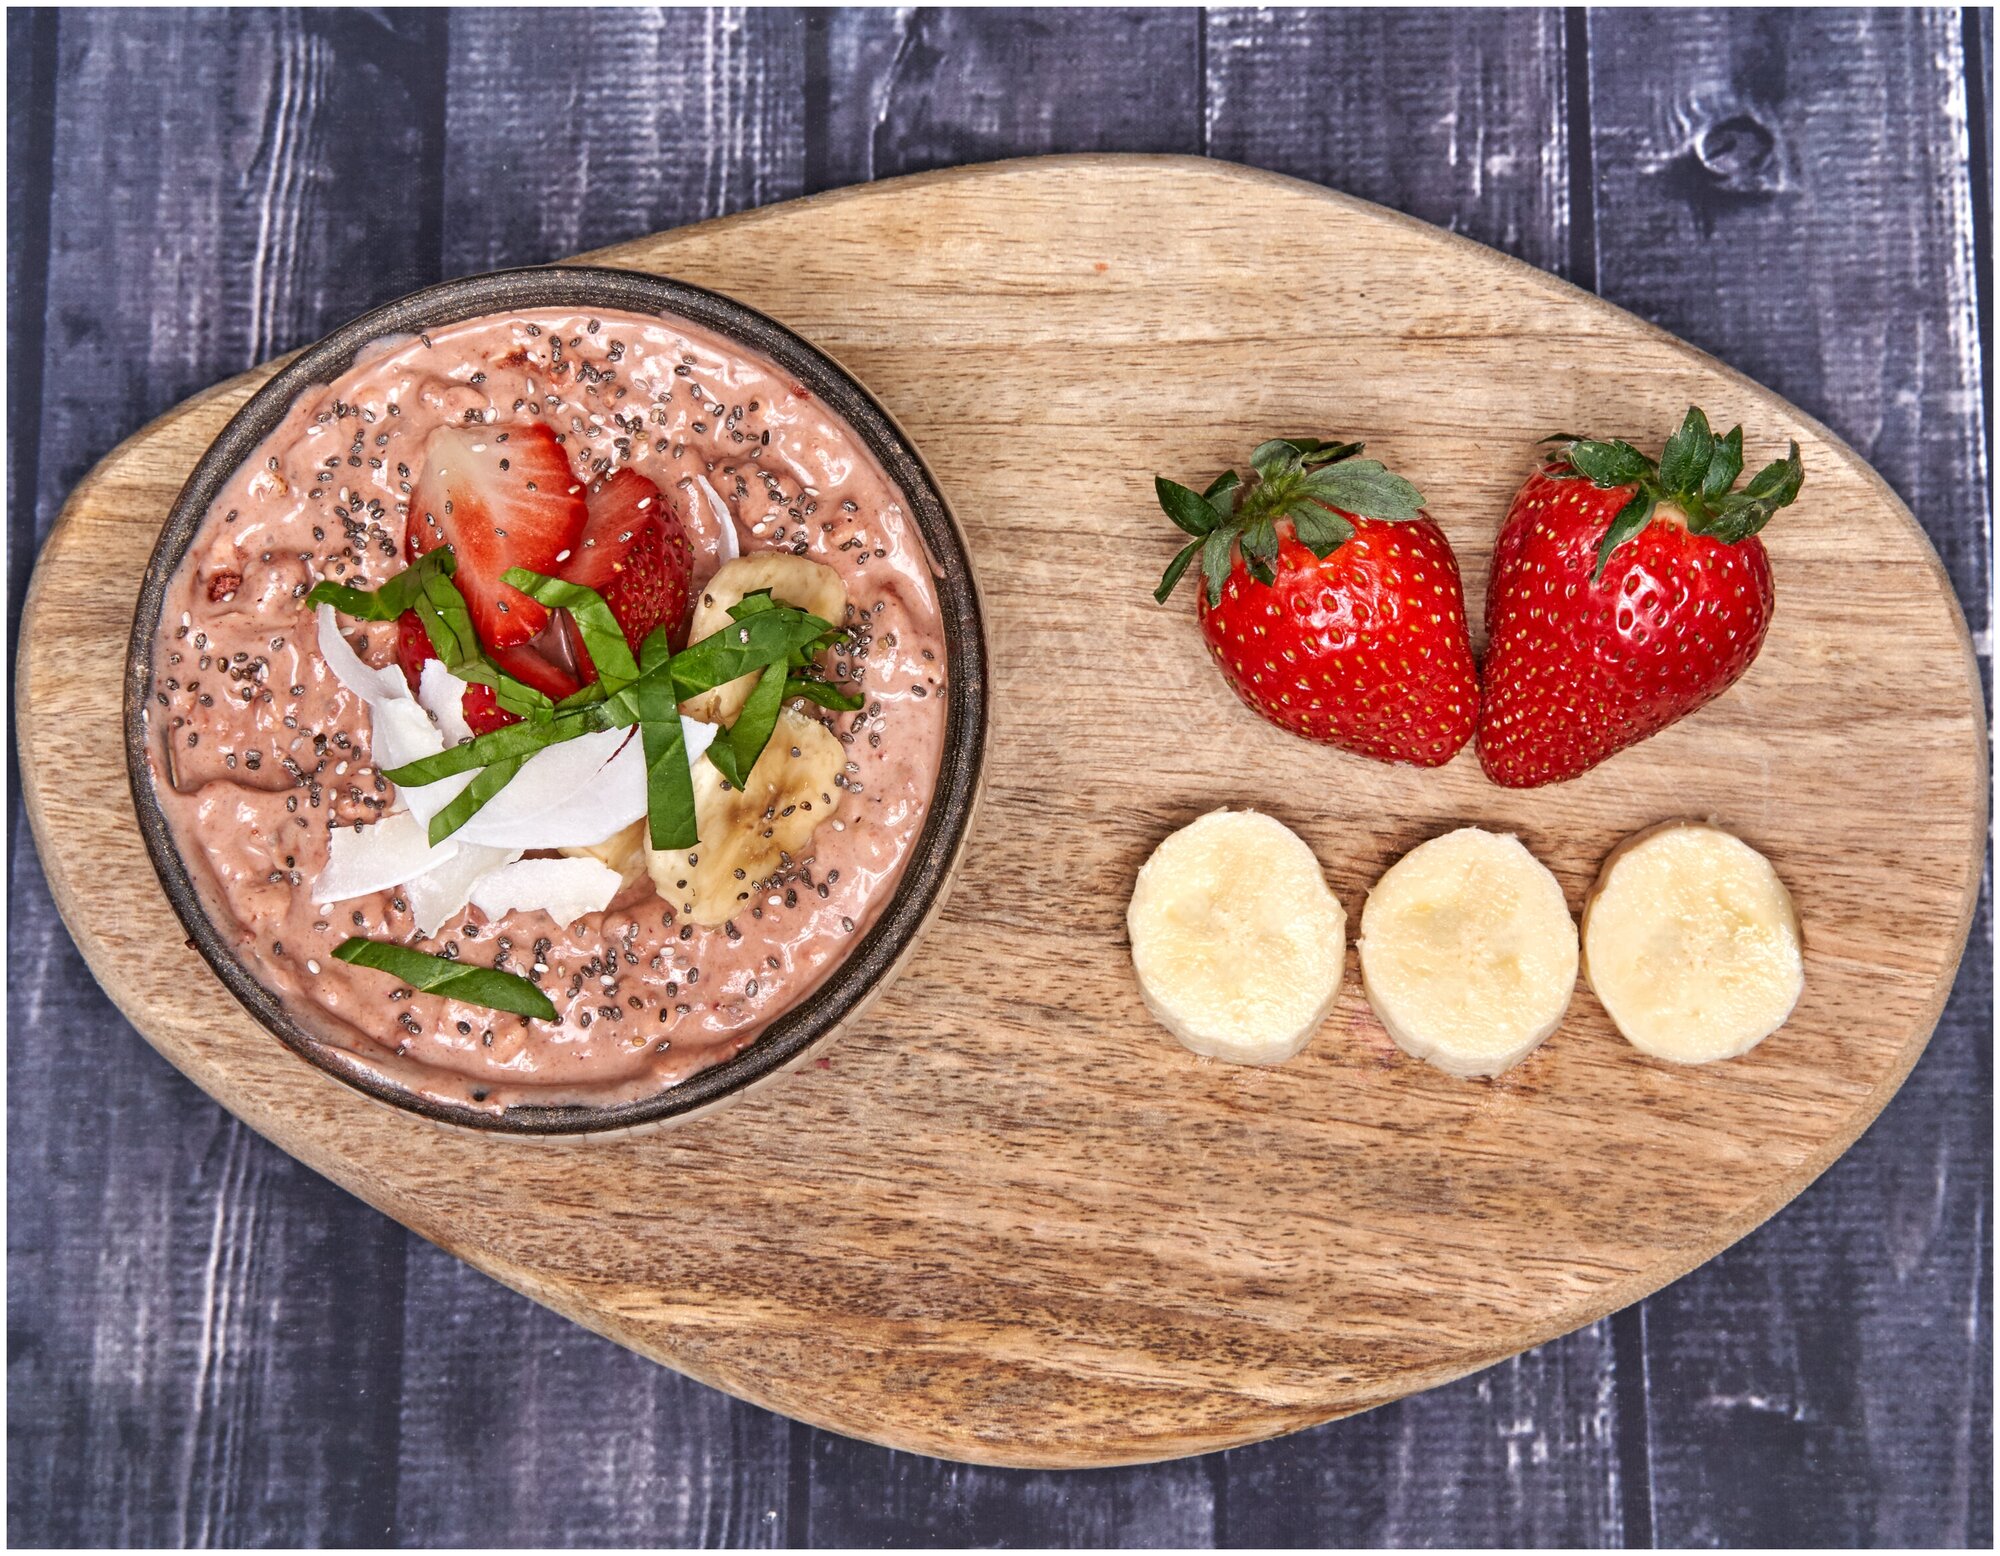 Злаки и ягоды с серотонином (здоровый завтрак) равновесие (35 гр.), туристическое питание, еда в поход, 2 шт. - фотография № 4